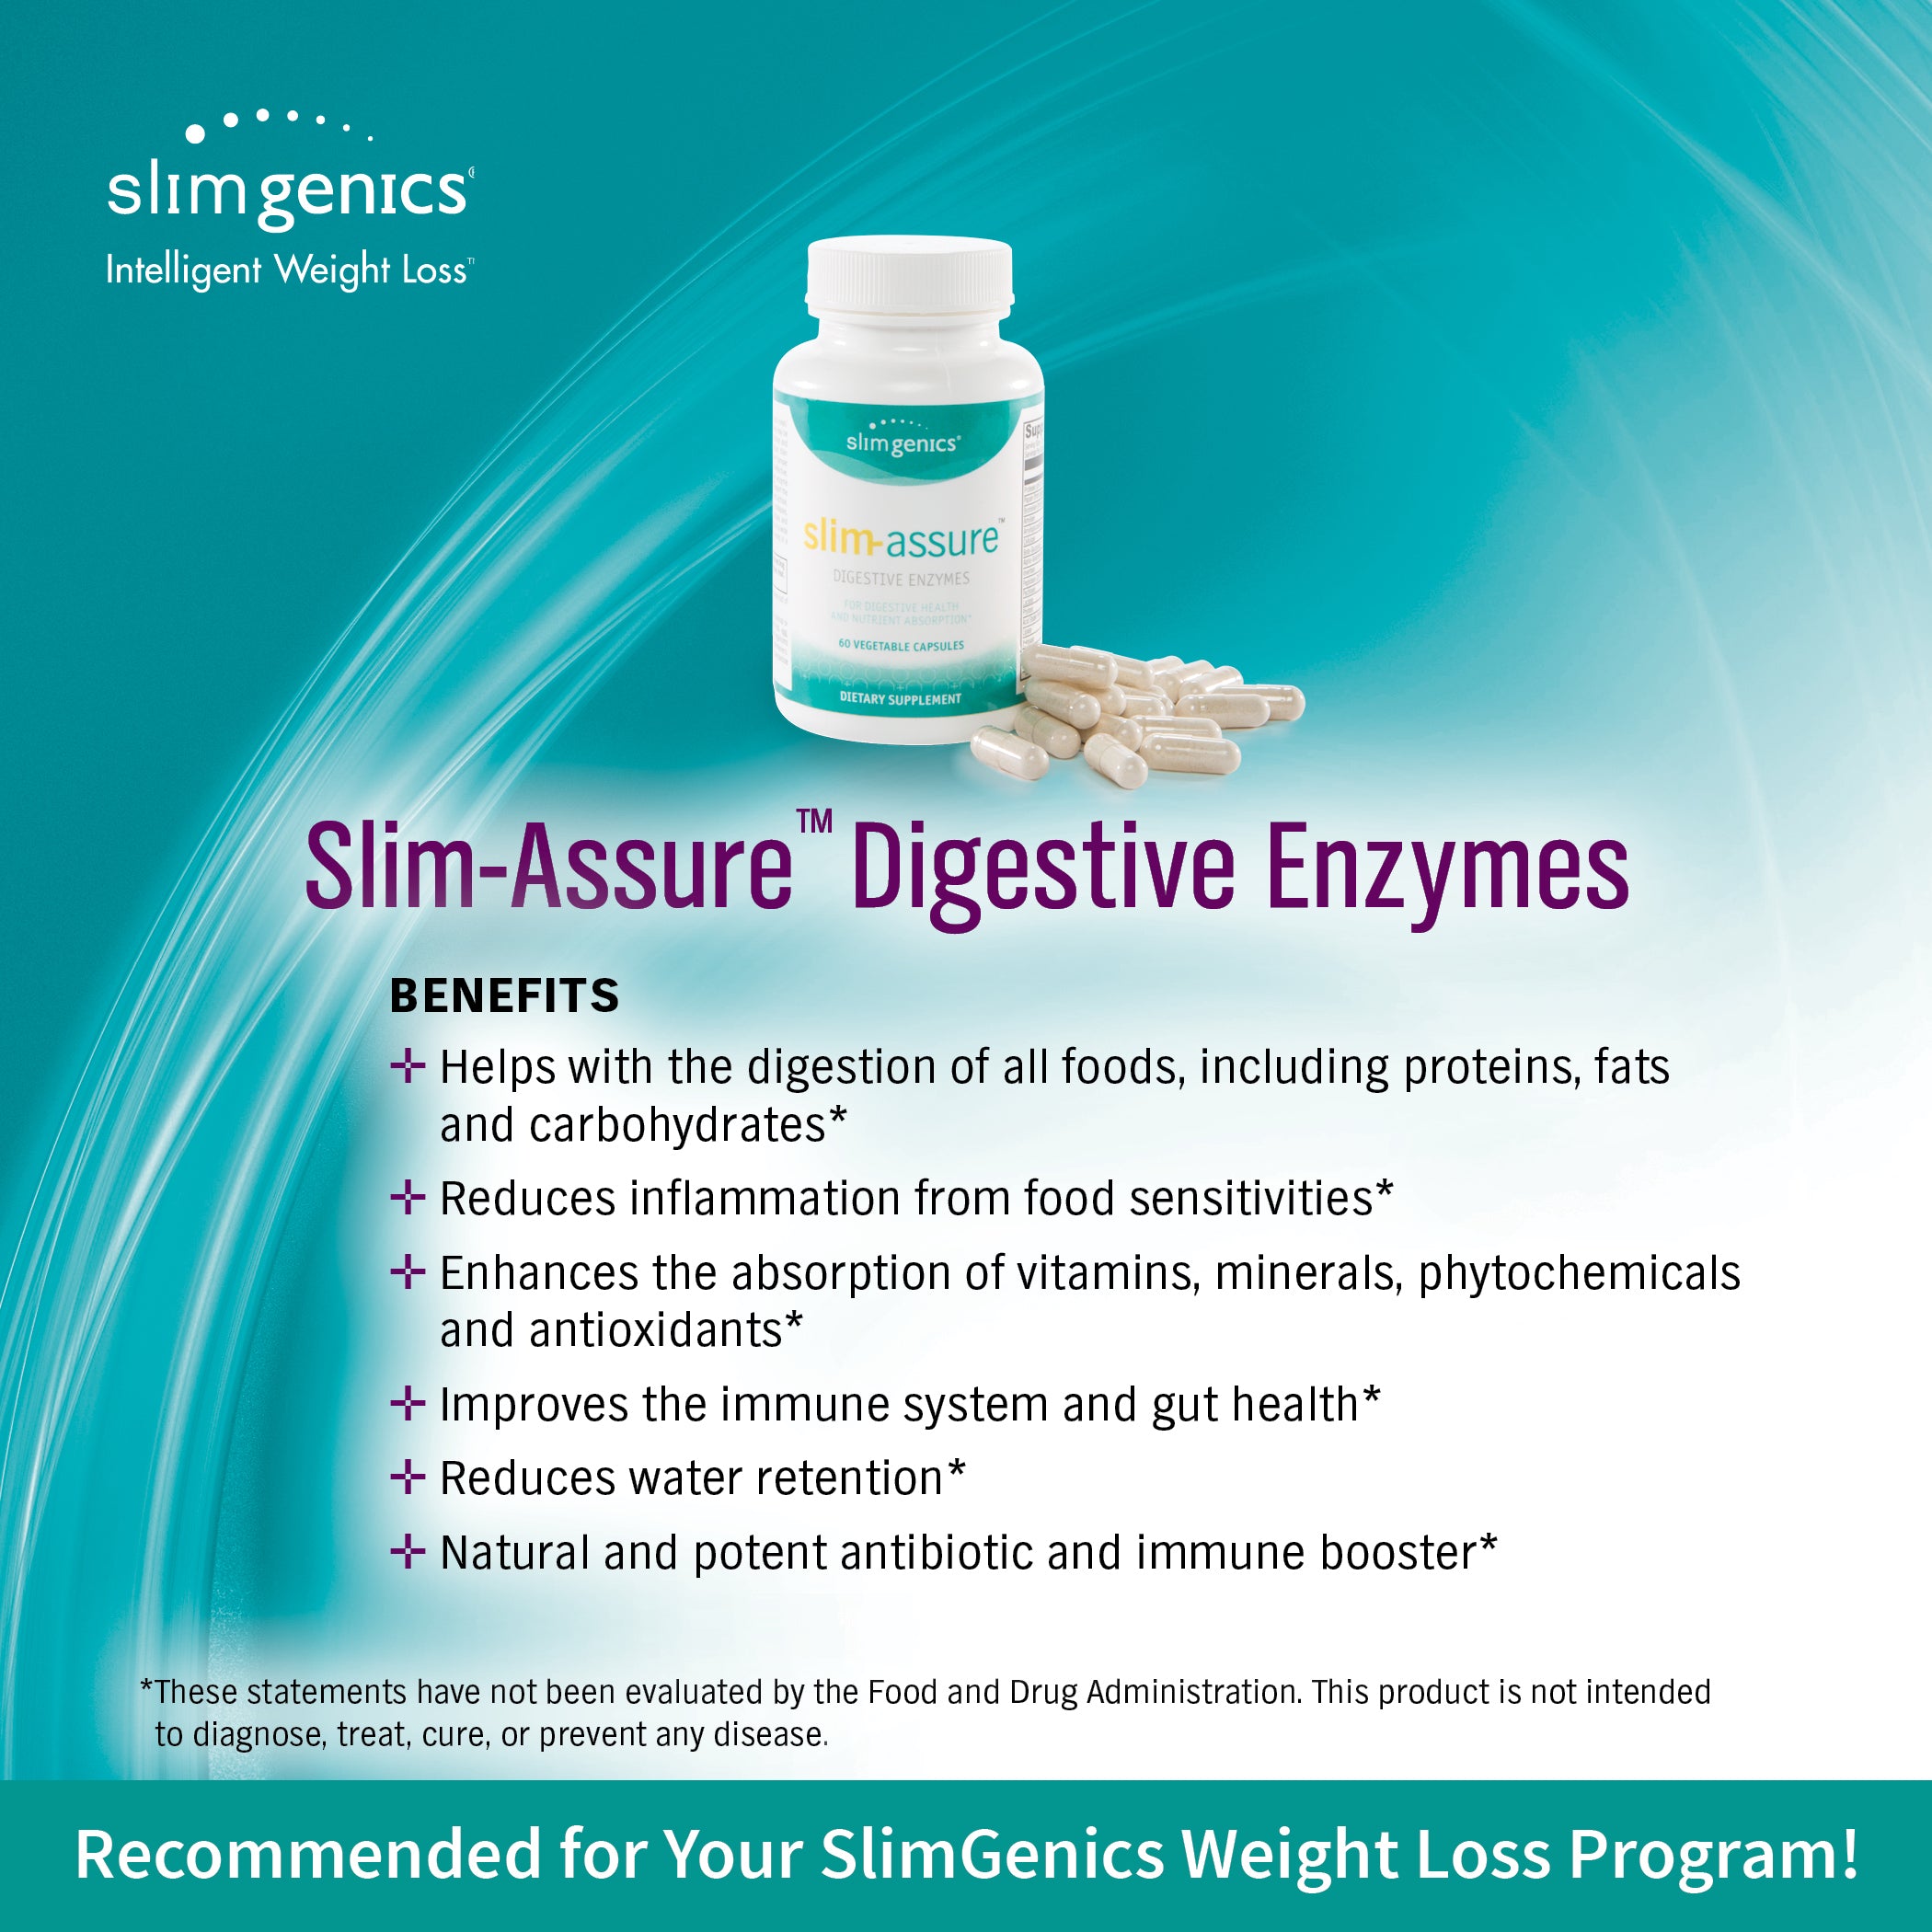 Slim-Assure Digestive Enzymes